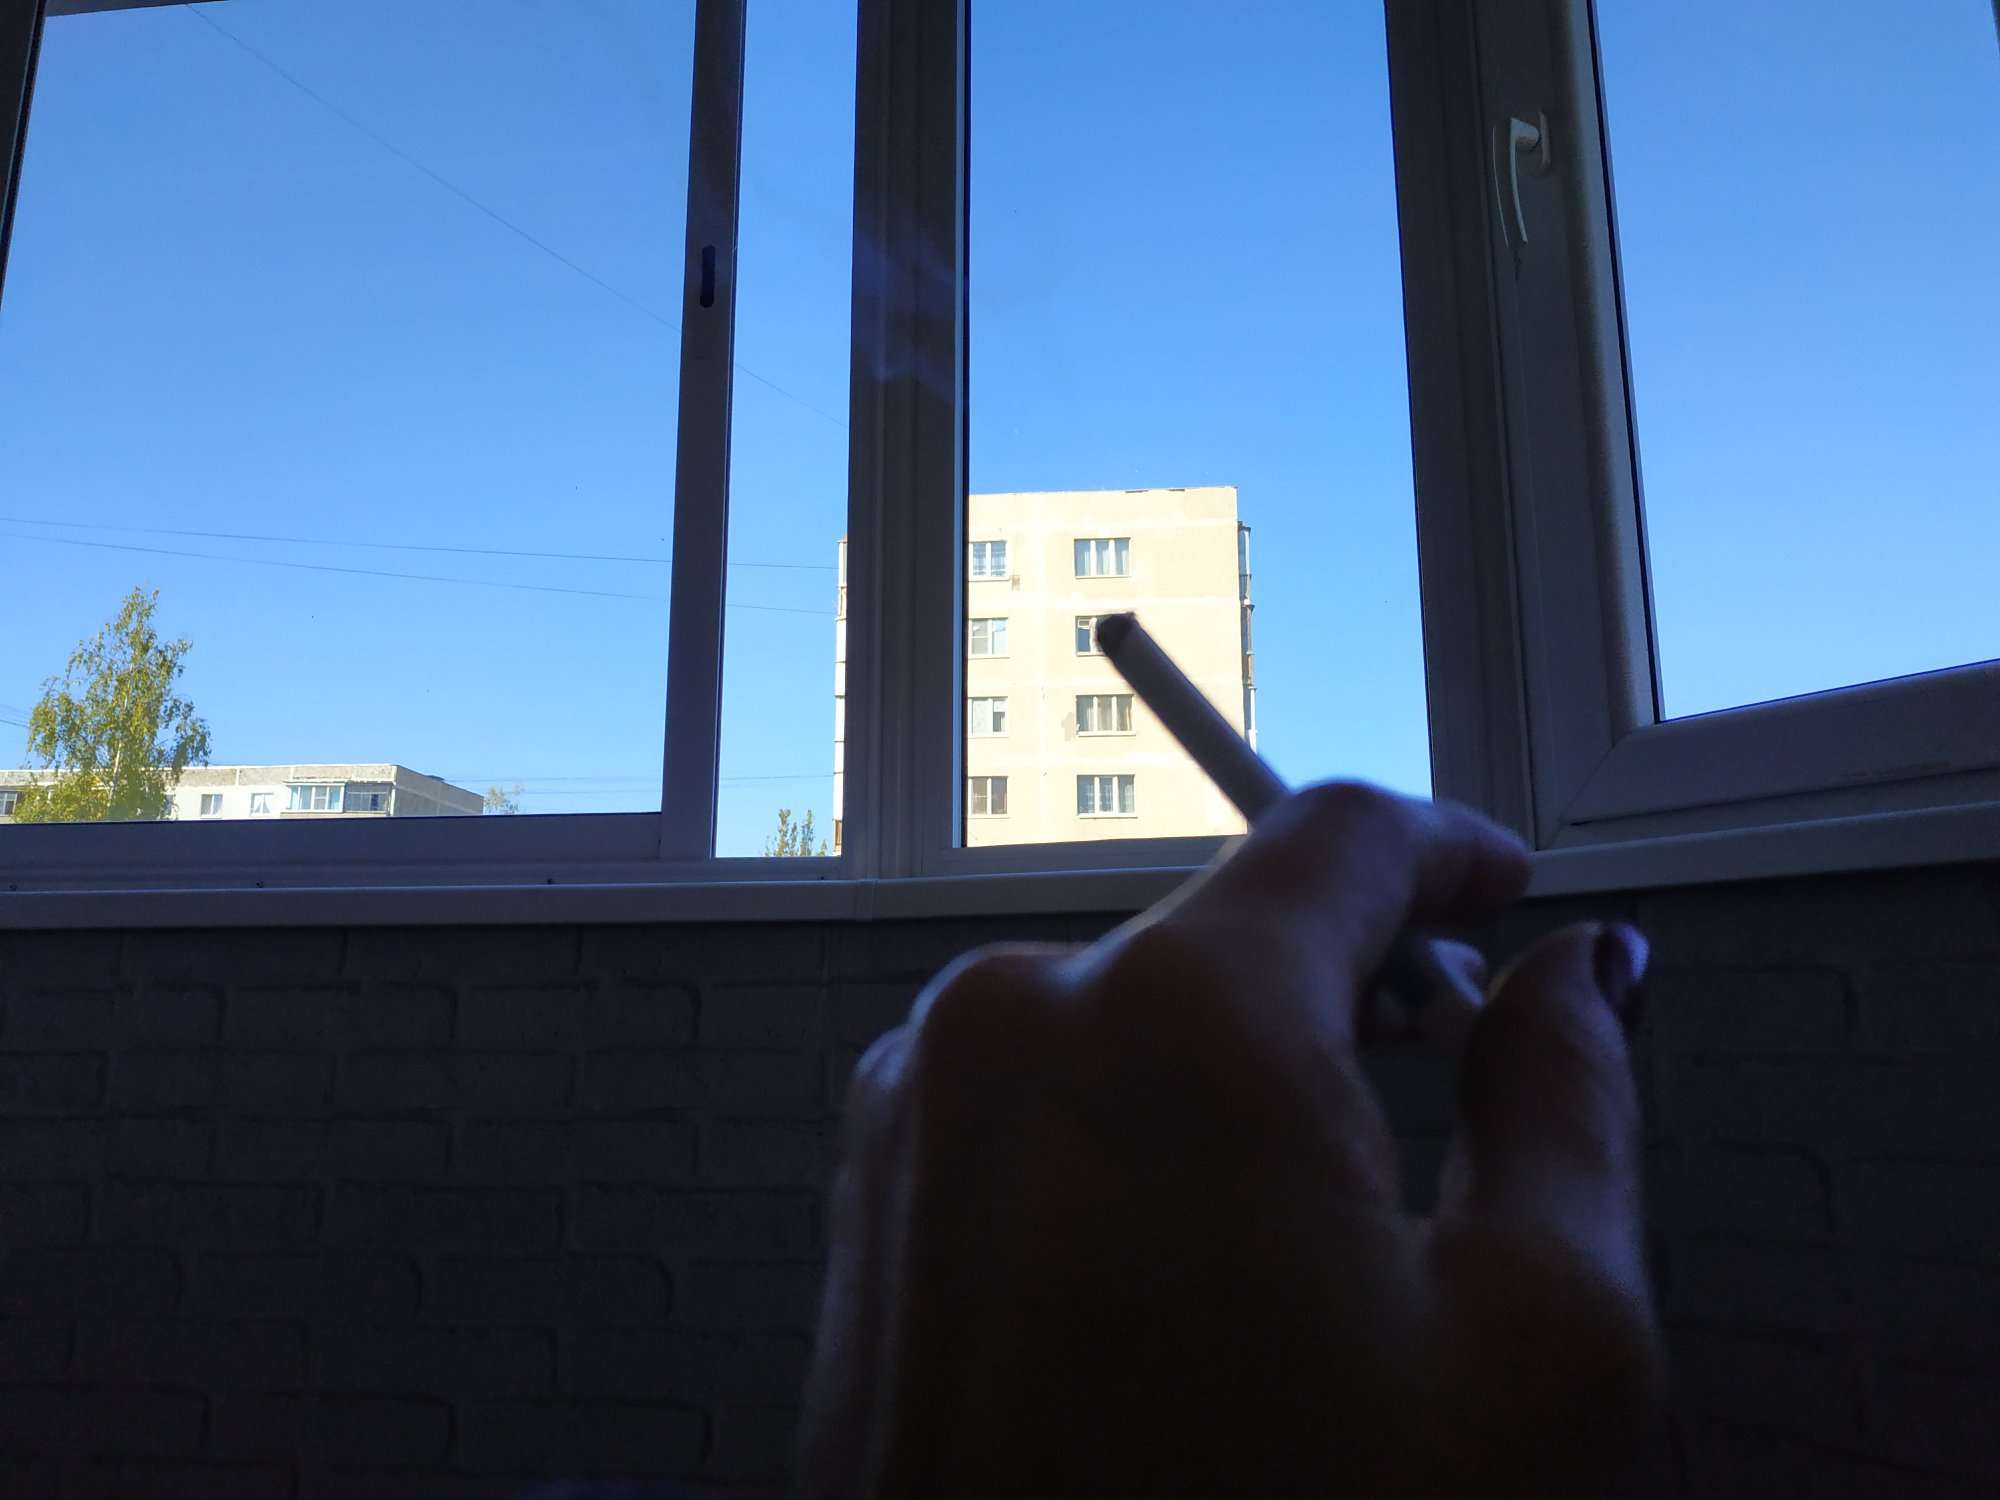 Песня выйду на балкон закурю сигарету. Курит на балконе. С сигаретой на балконе. Курение на балконе. Человек с сигаретой на балконе.